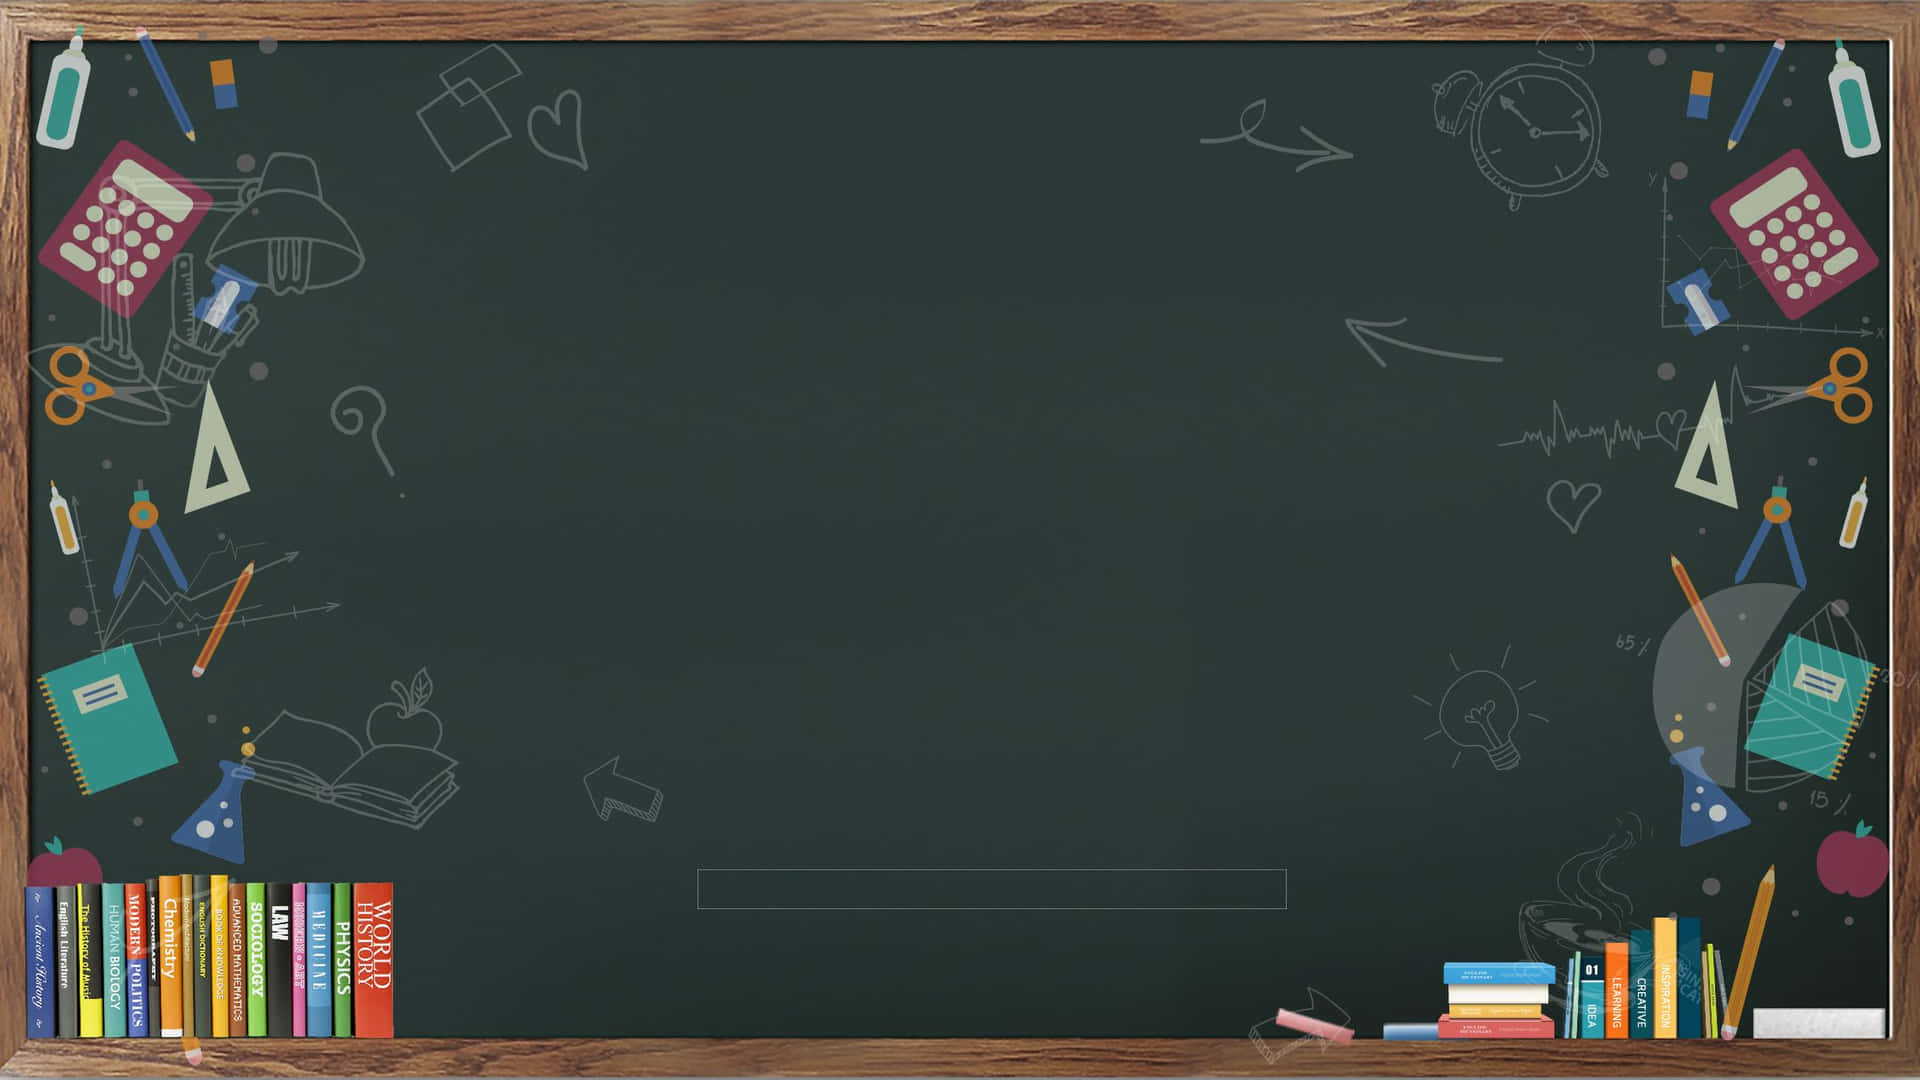 100+] Blackboard Backgrounds